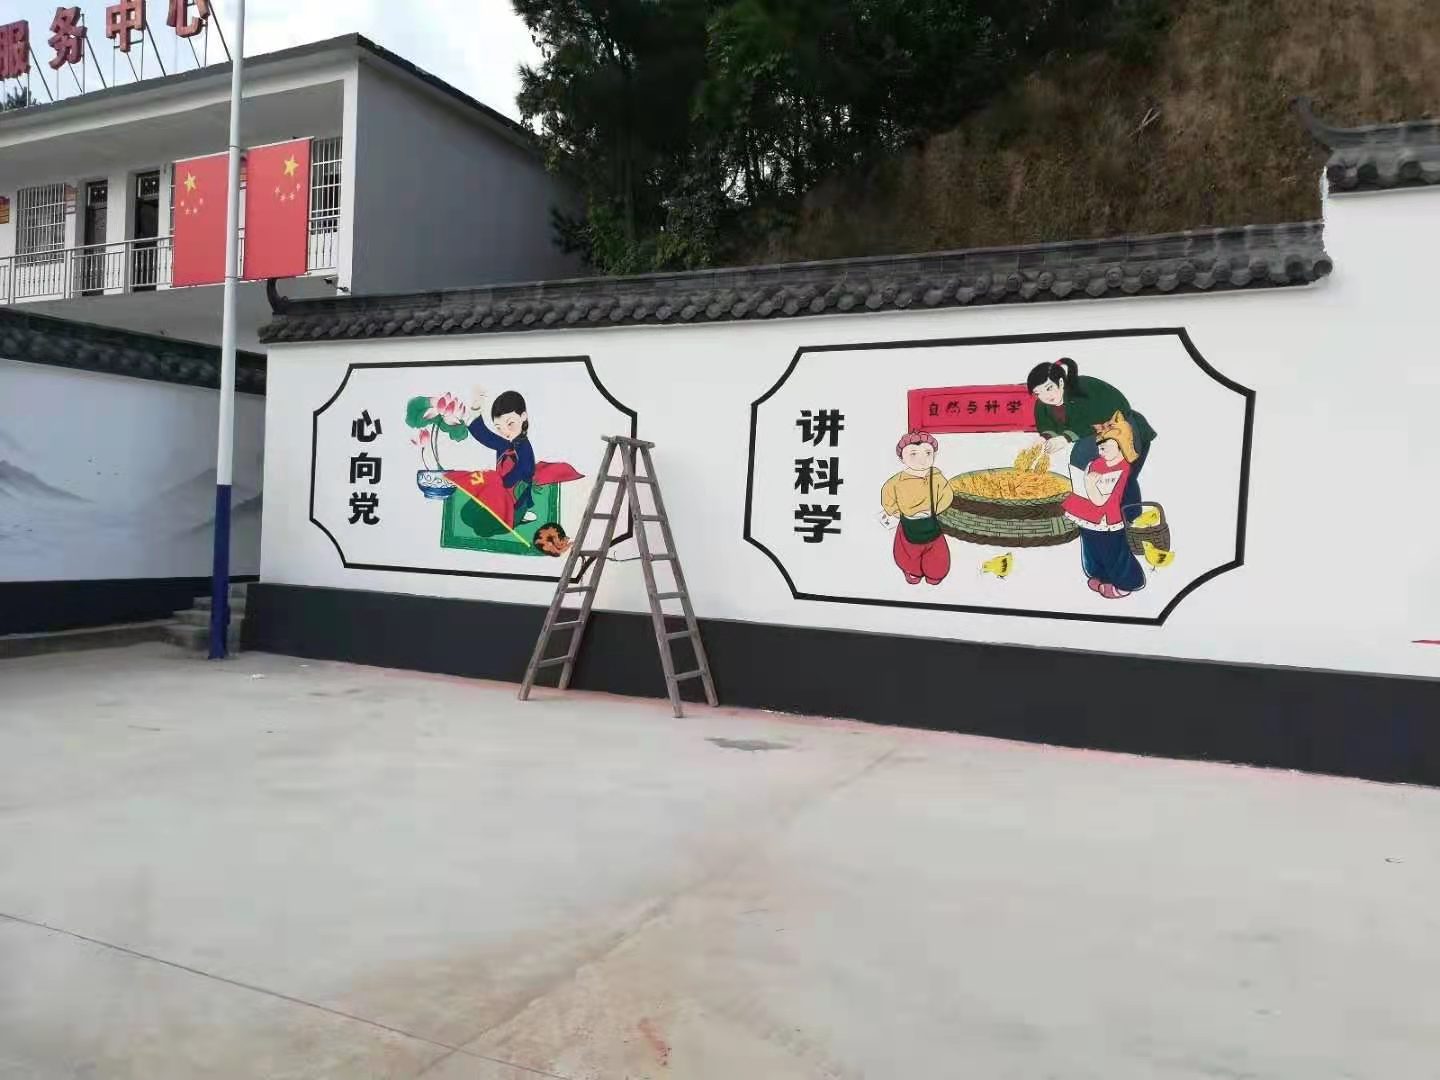 新郑马路边围墙贴着墙体喷绘广告，路过的都能看见这广告。